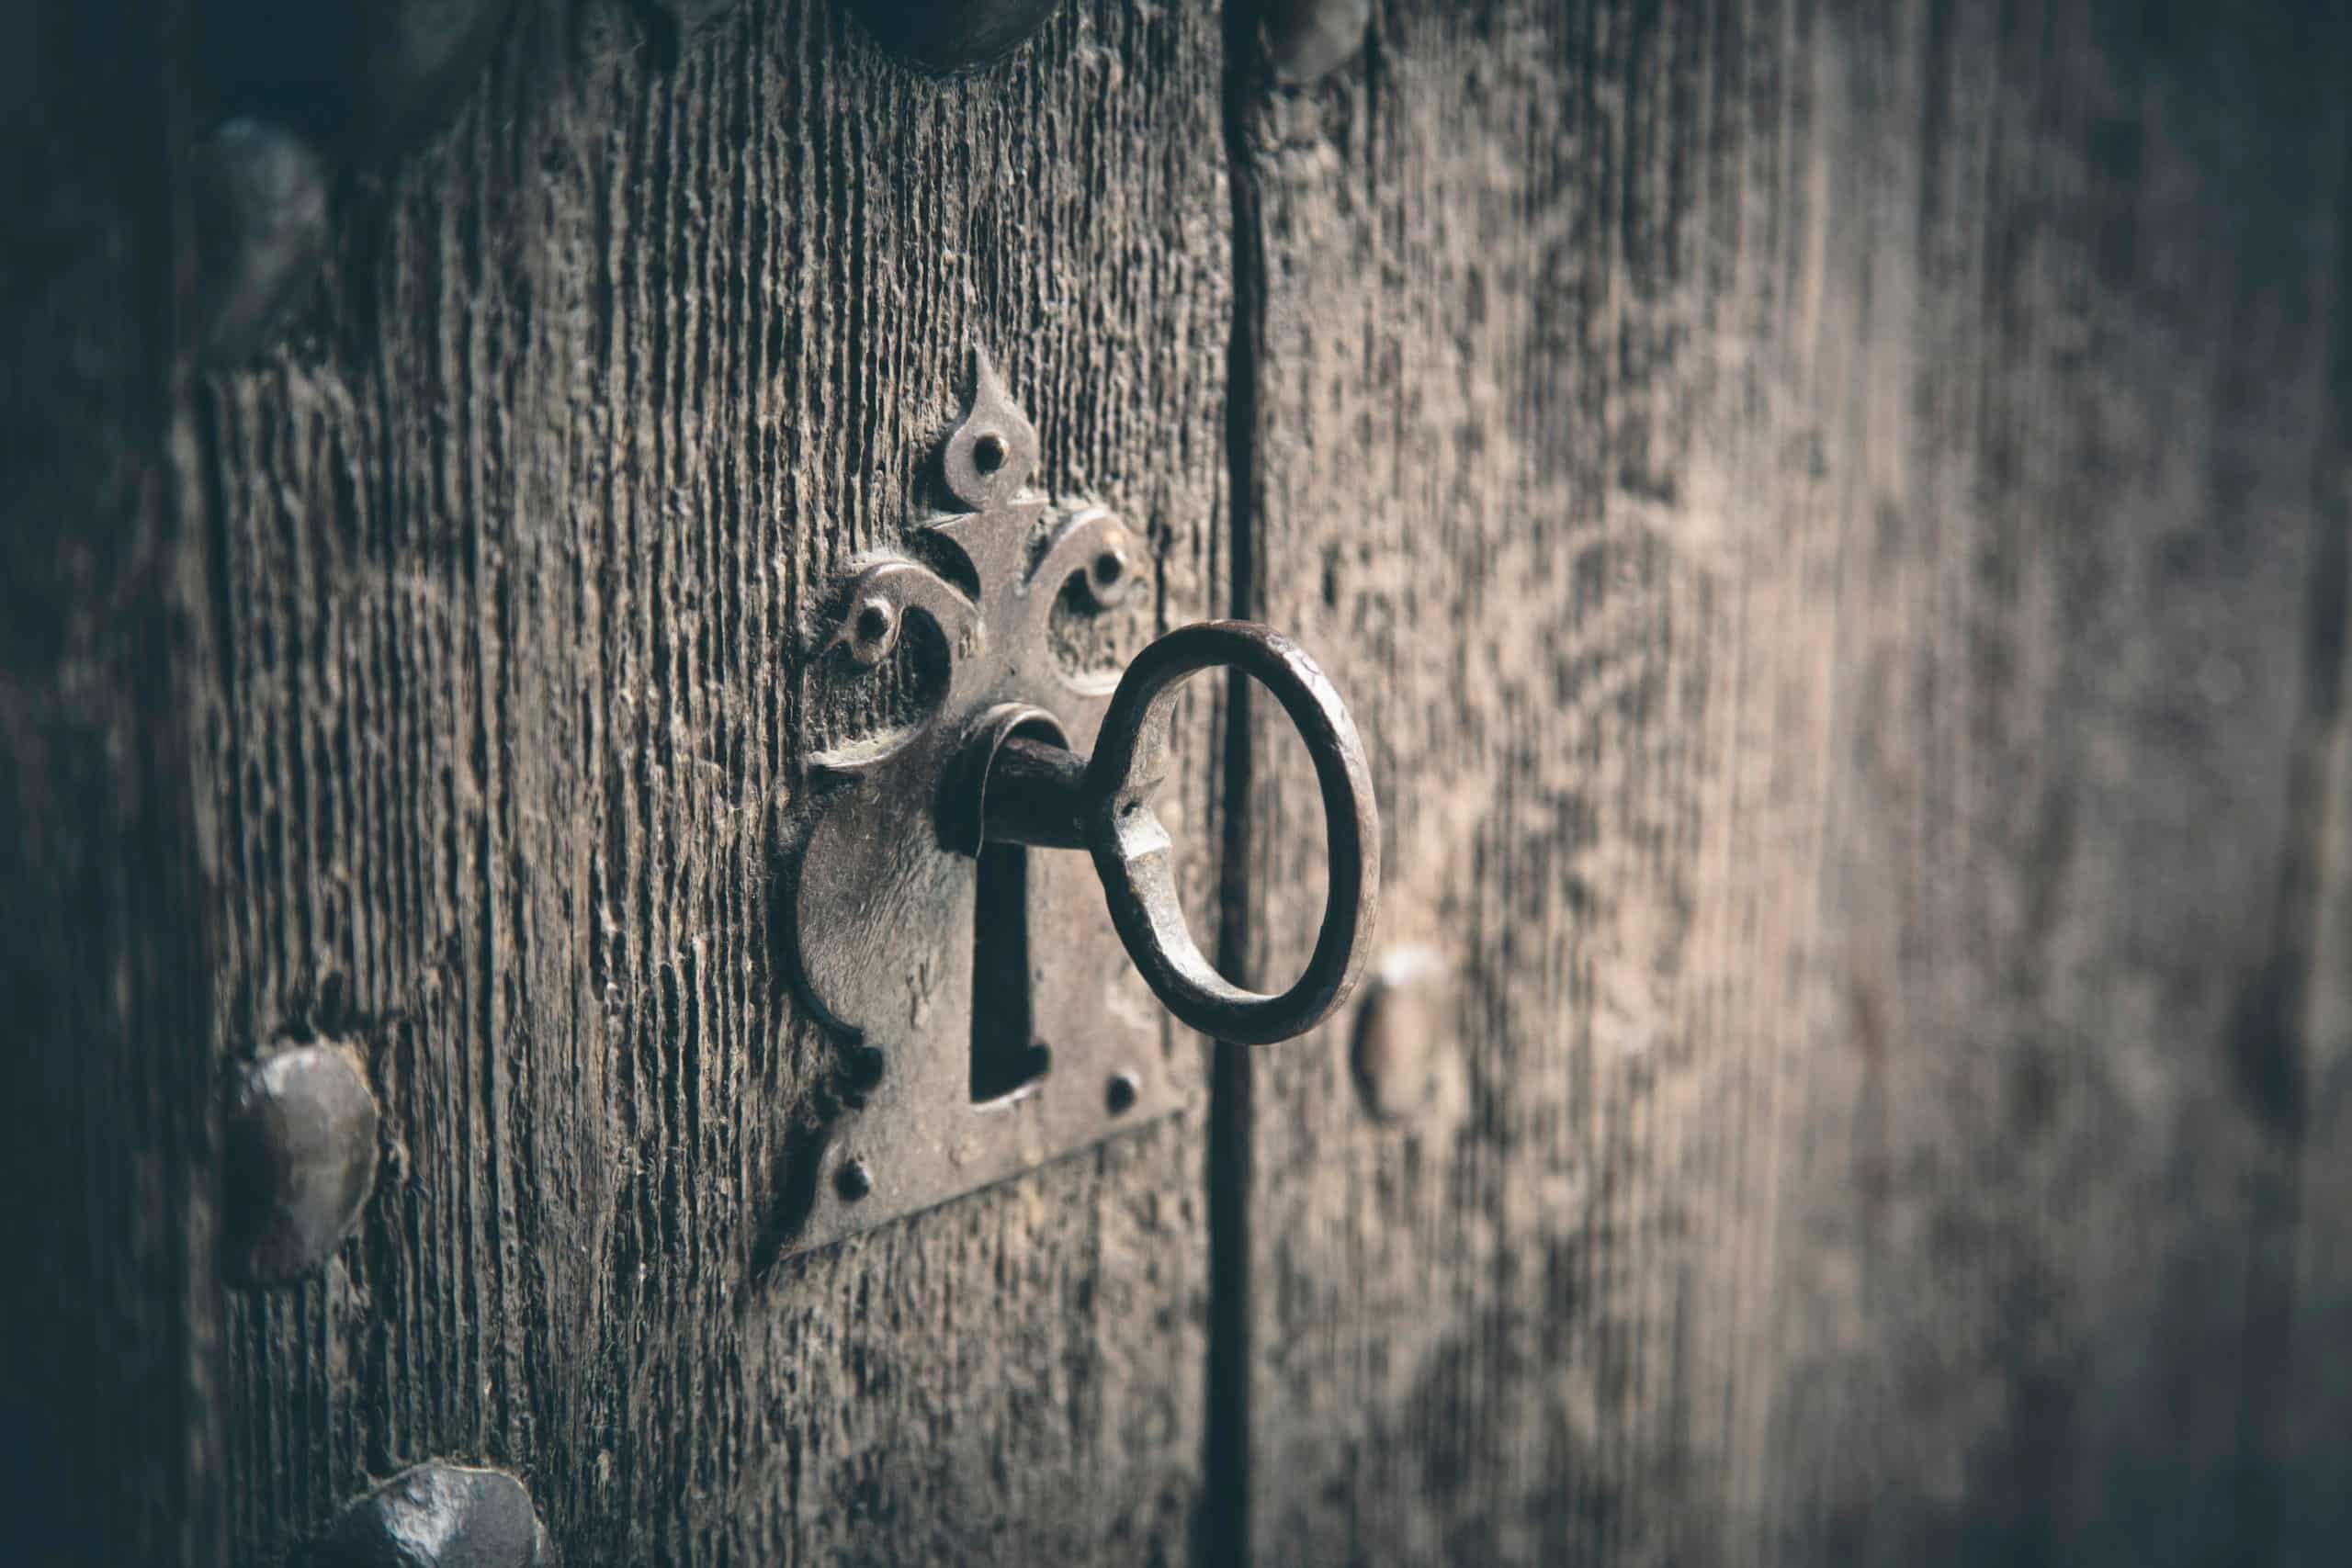 Rustic wooden door with old key.